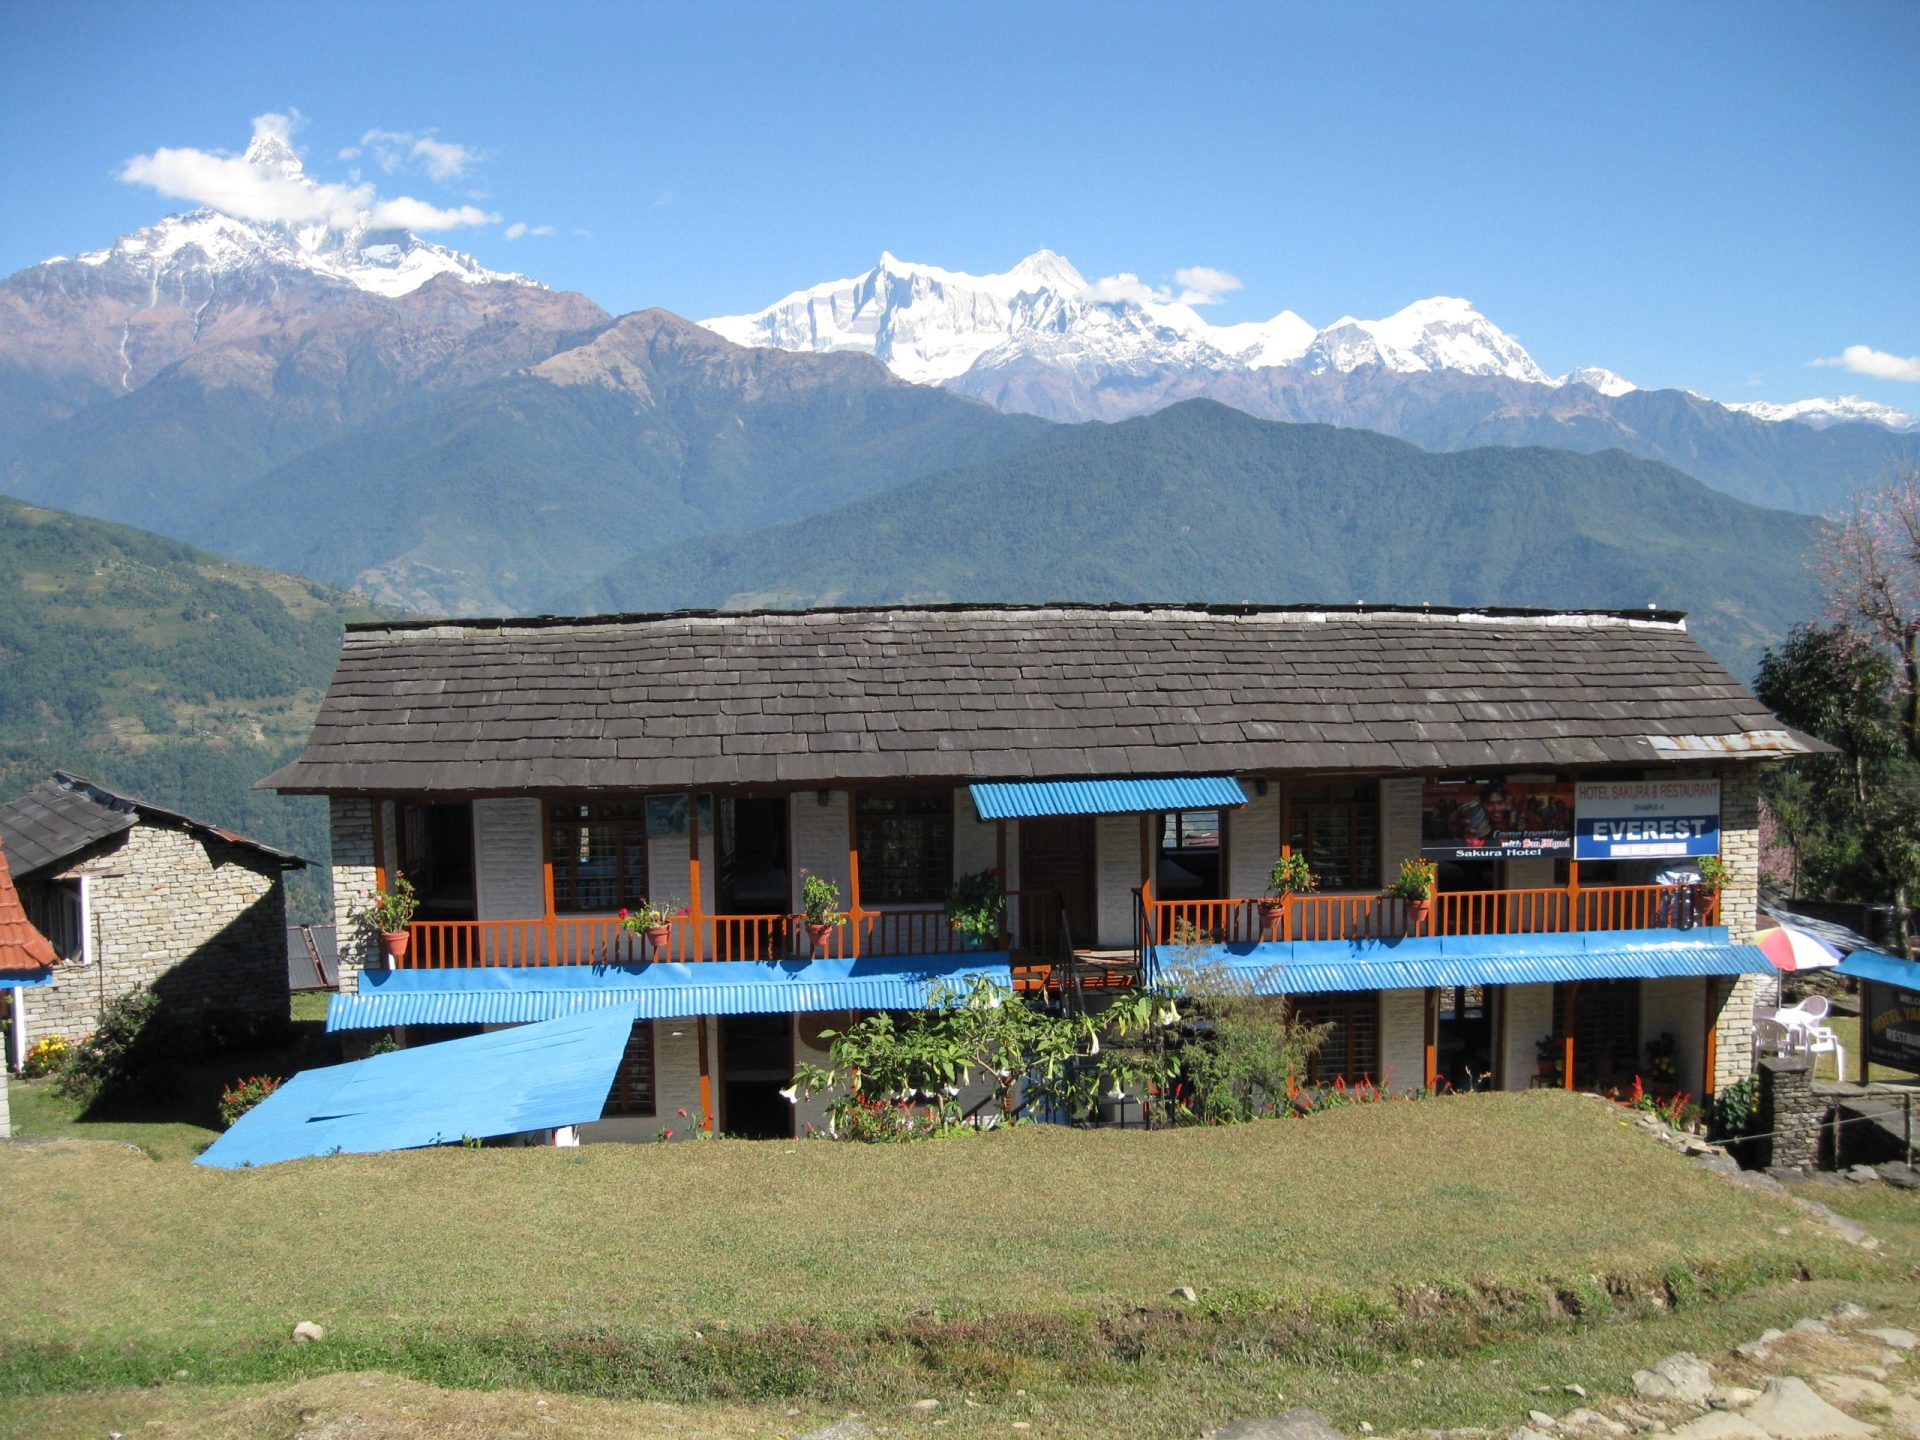 Annapurna trekking